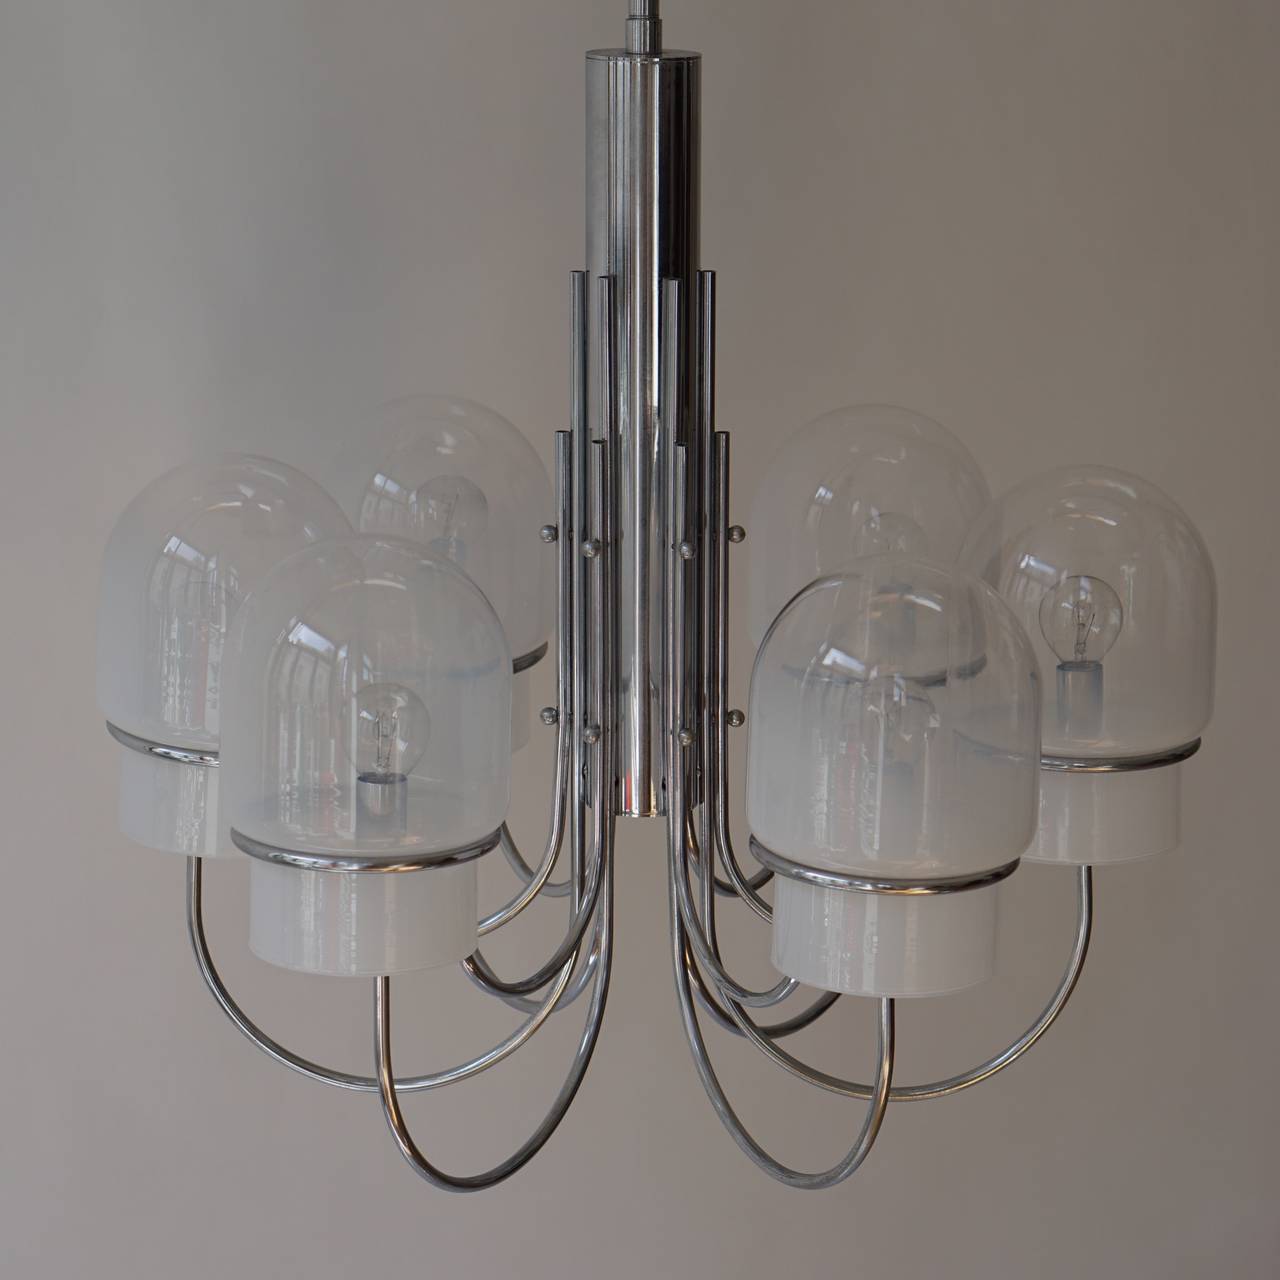 Italienischer sechsarmiger Kronleuchter aus Chrom und Milchglas, ca. 1960er Jahre. 
Ein einzelner geriffelter Stiel, der sechs geschwungene Arme mit abgerundeten Milchglasschirmen trägt. 

Durchmesser 60 cm.
Höhe 110 cm.